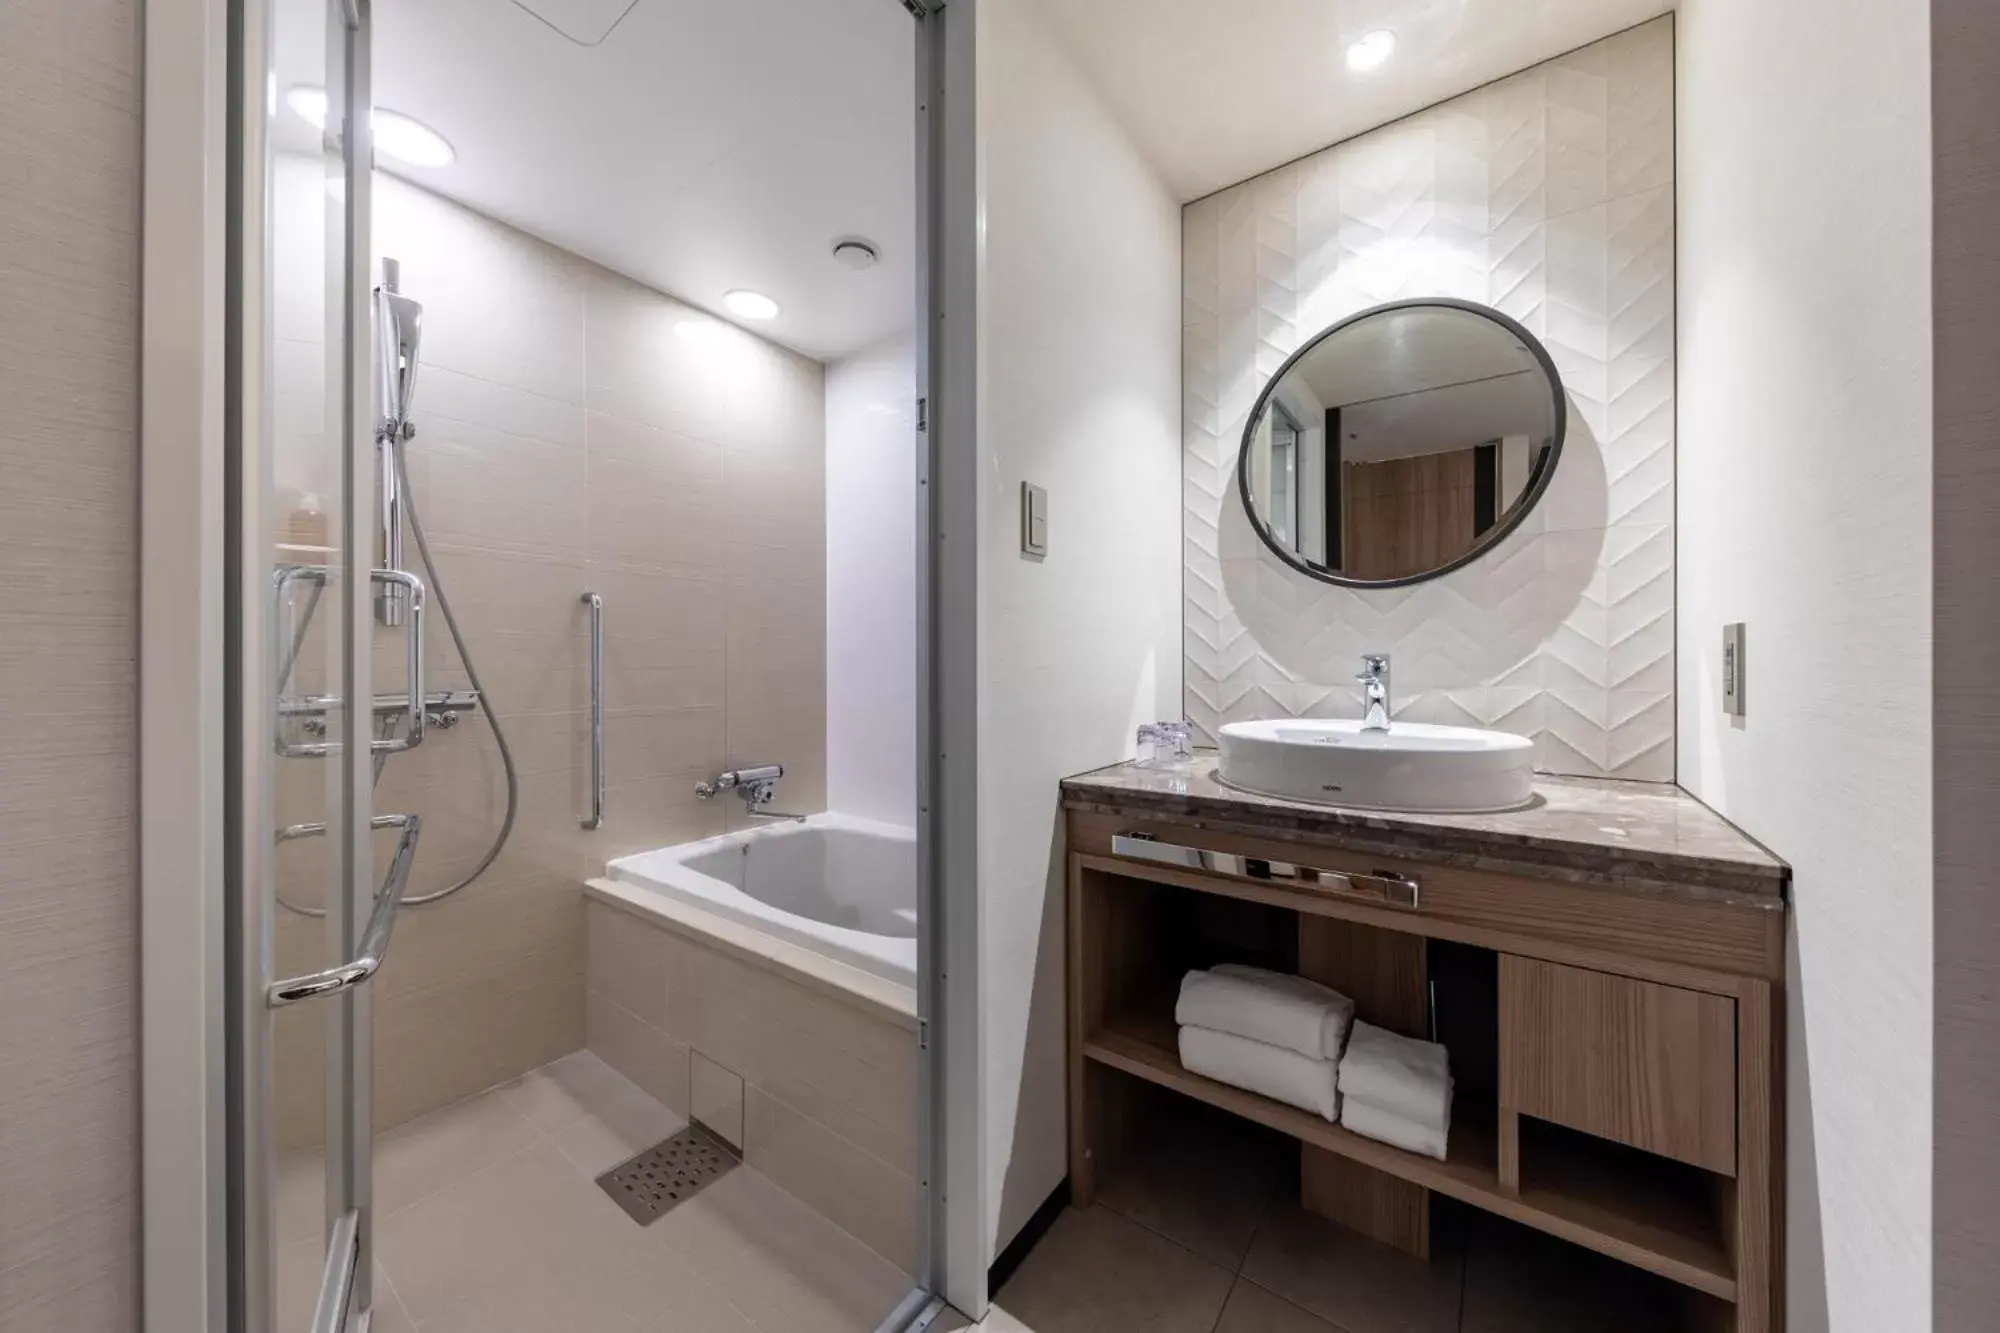 Shower, Bathroom in Solaria Nishitetsu Hotel Sapporo